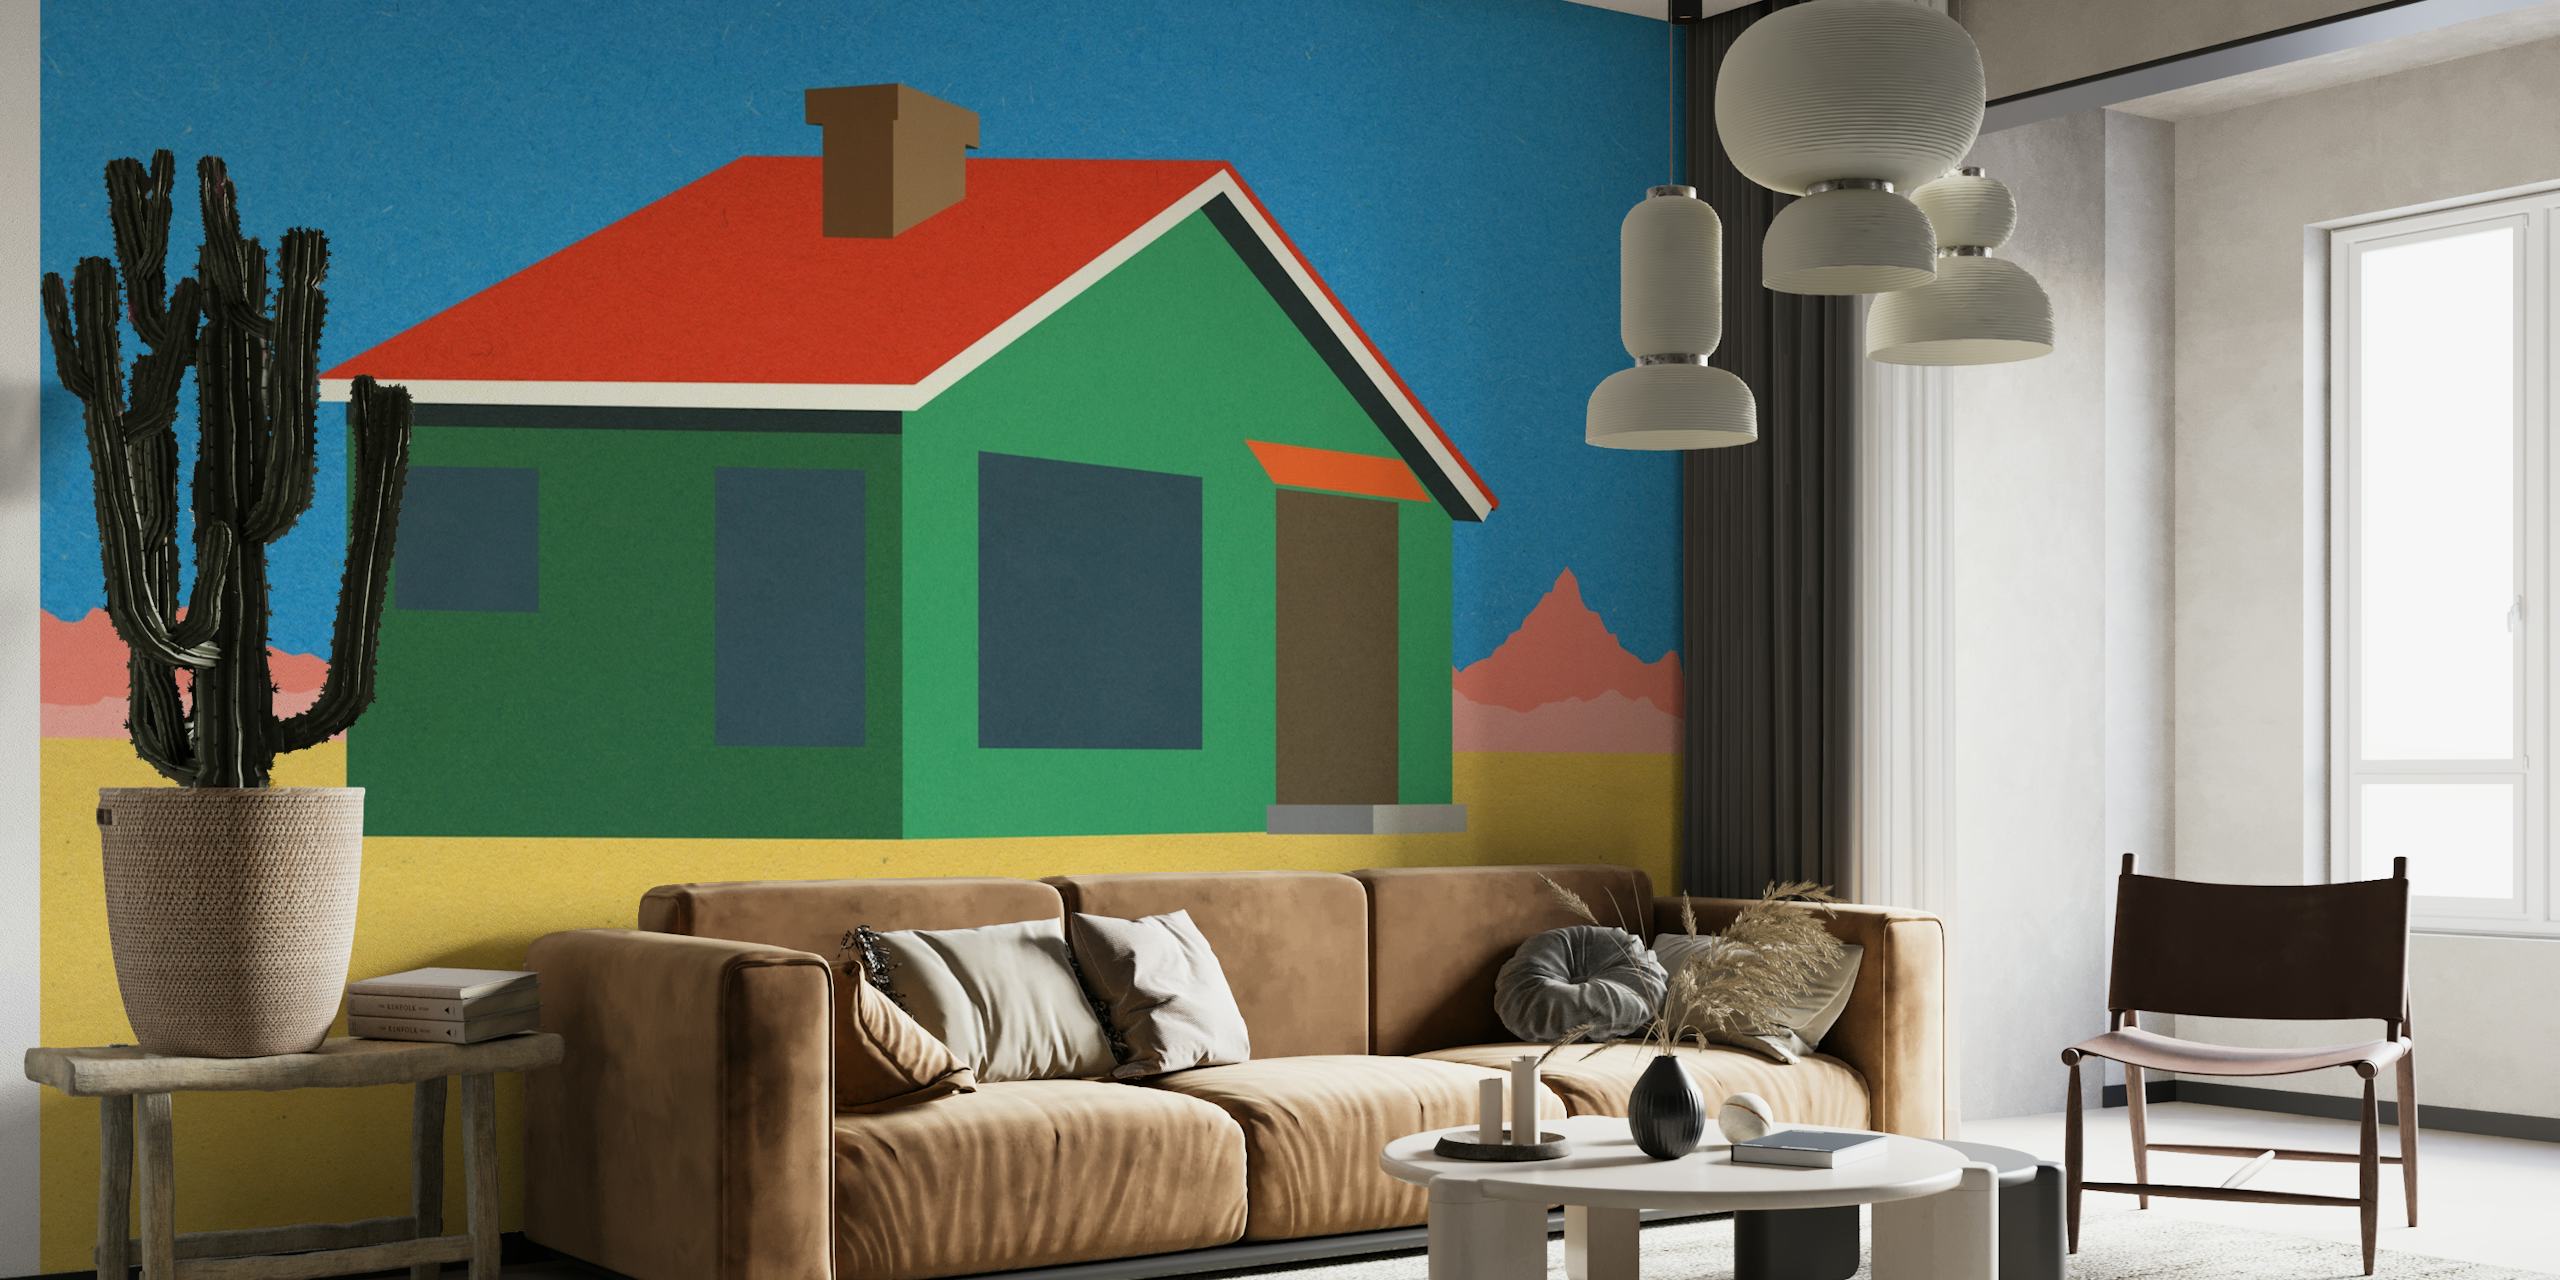 Fotomural vinílico de parede estilizado da casa do deserto de Joshua Tree com cores vibrantes